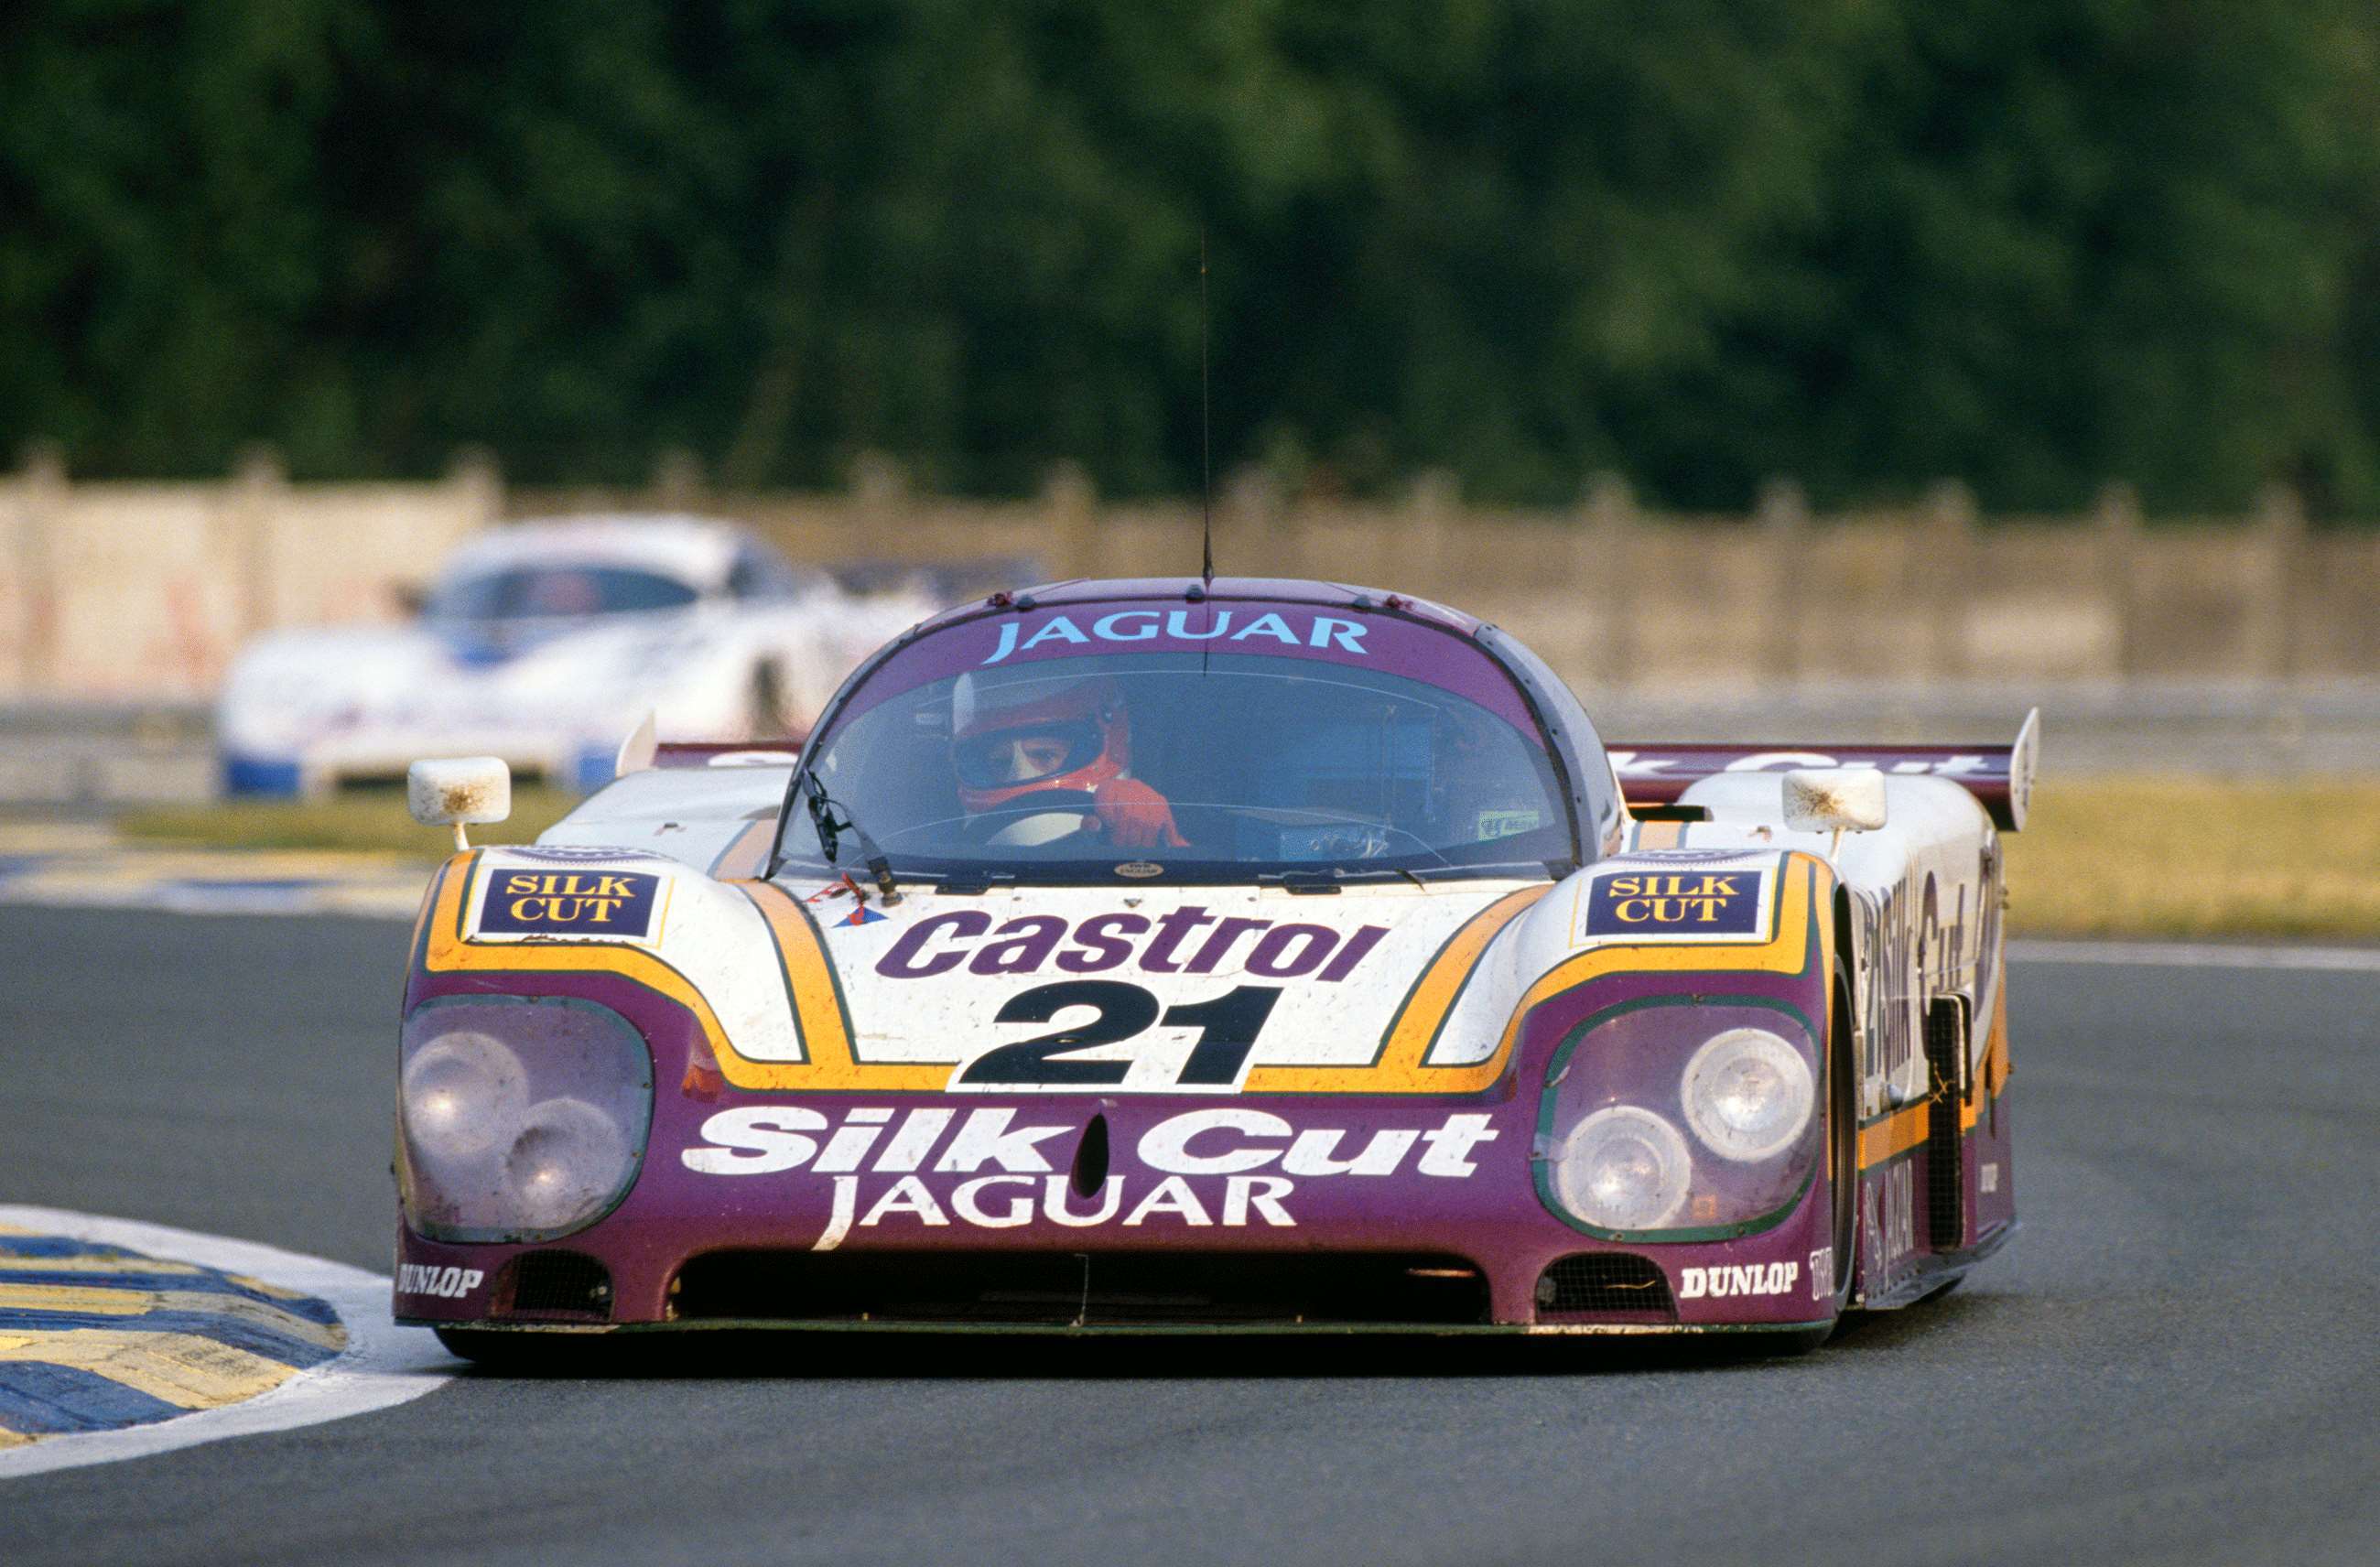 le-mans-1988-twr-jaguar-xjr-9-motorsport-images-goodwood-10122019.jpg